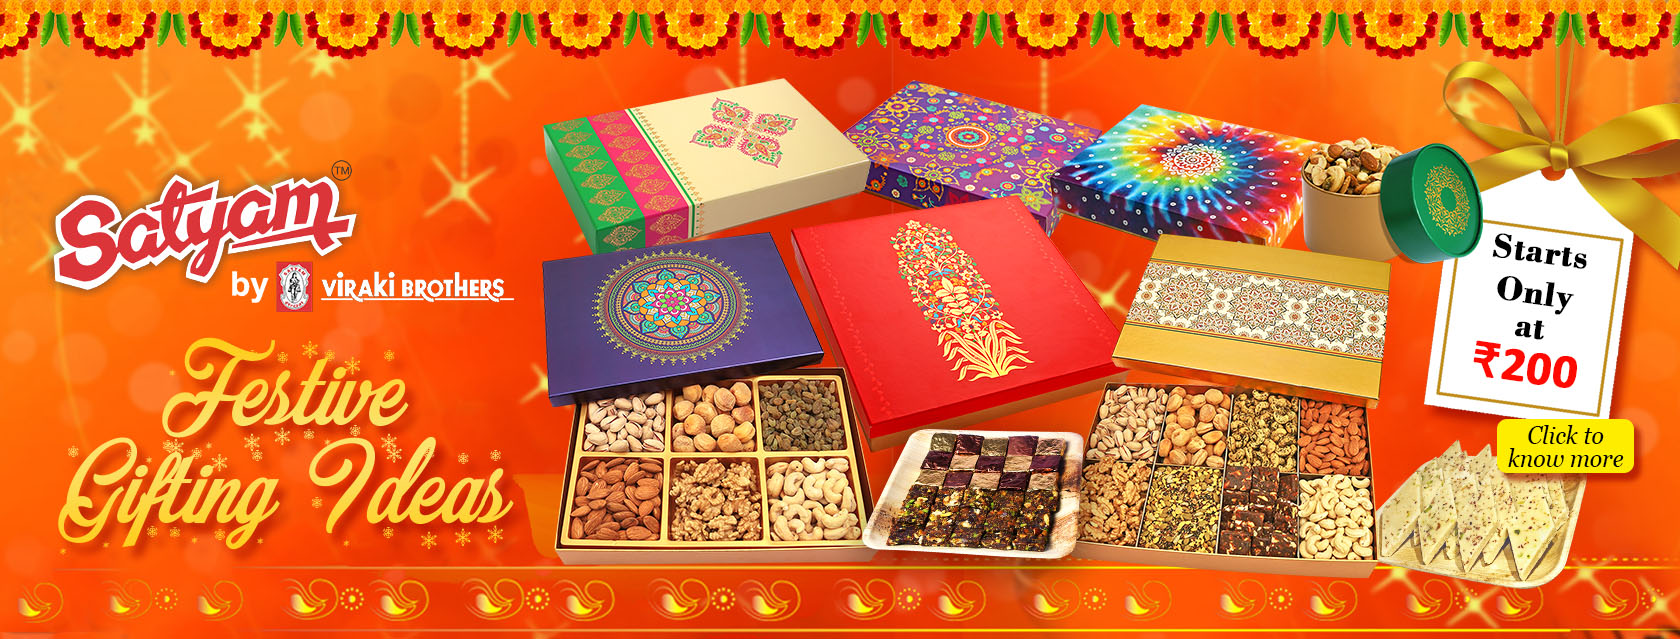 Diwali Gifting ideas